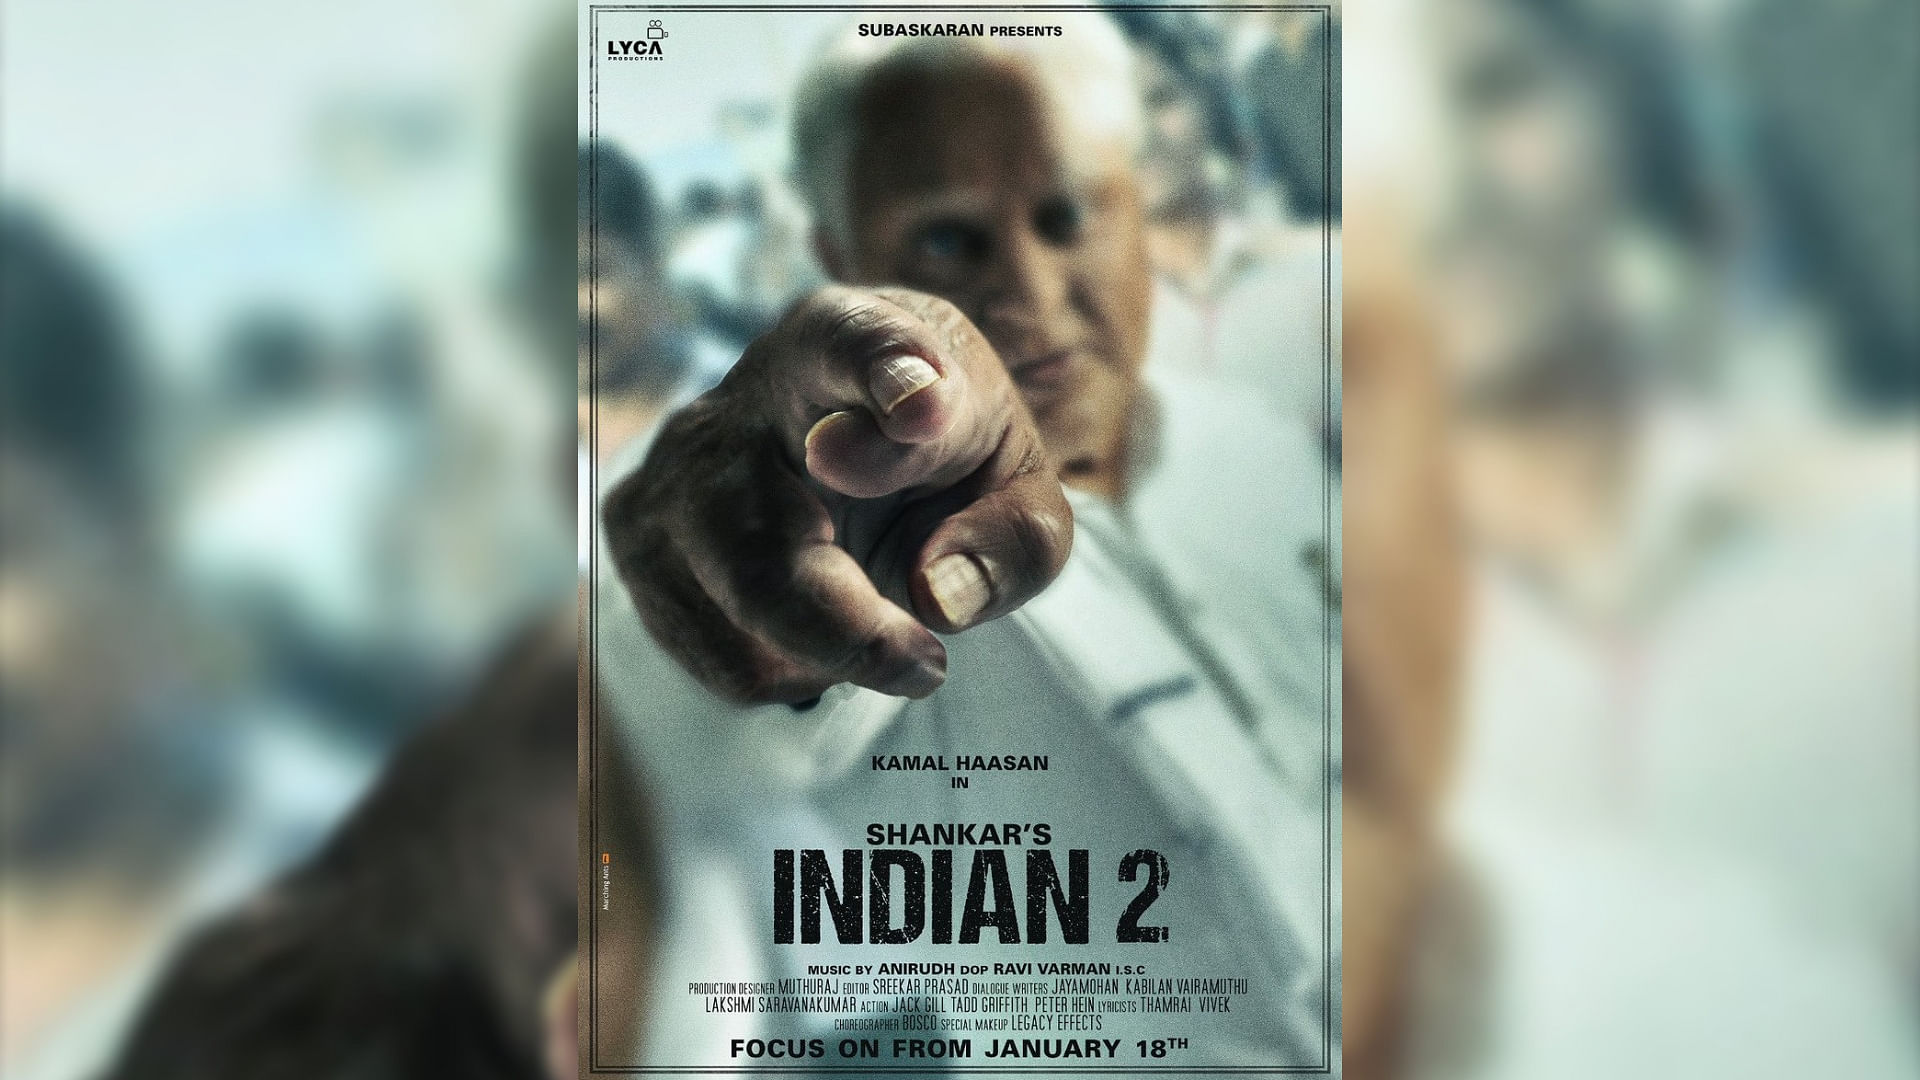 Kamal Haasan in <i>Indian 2.</i>